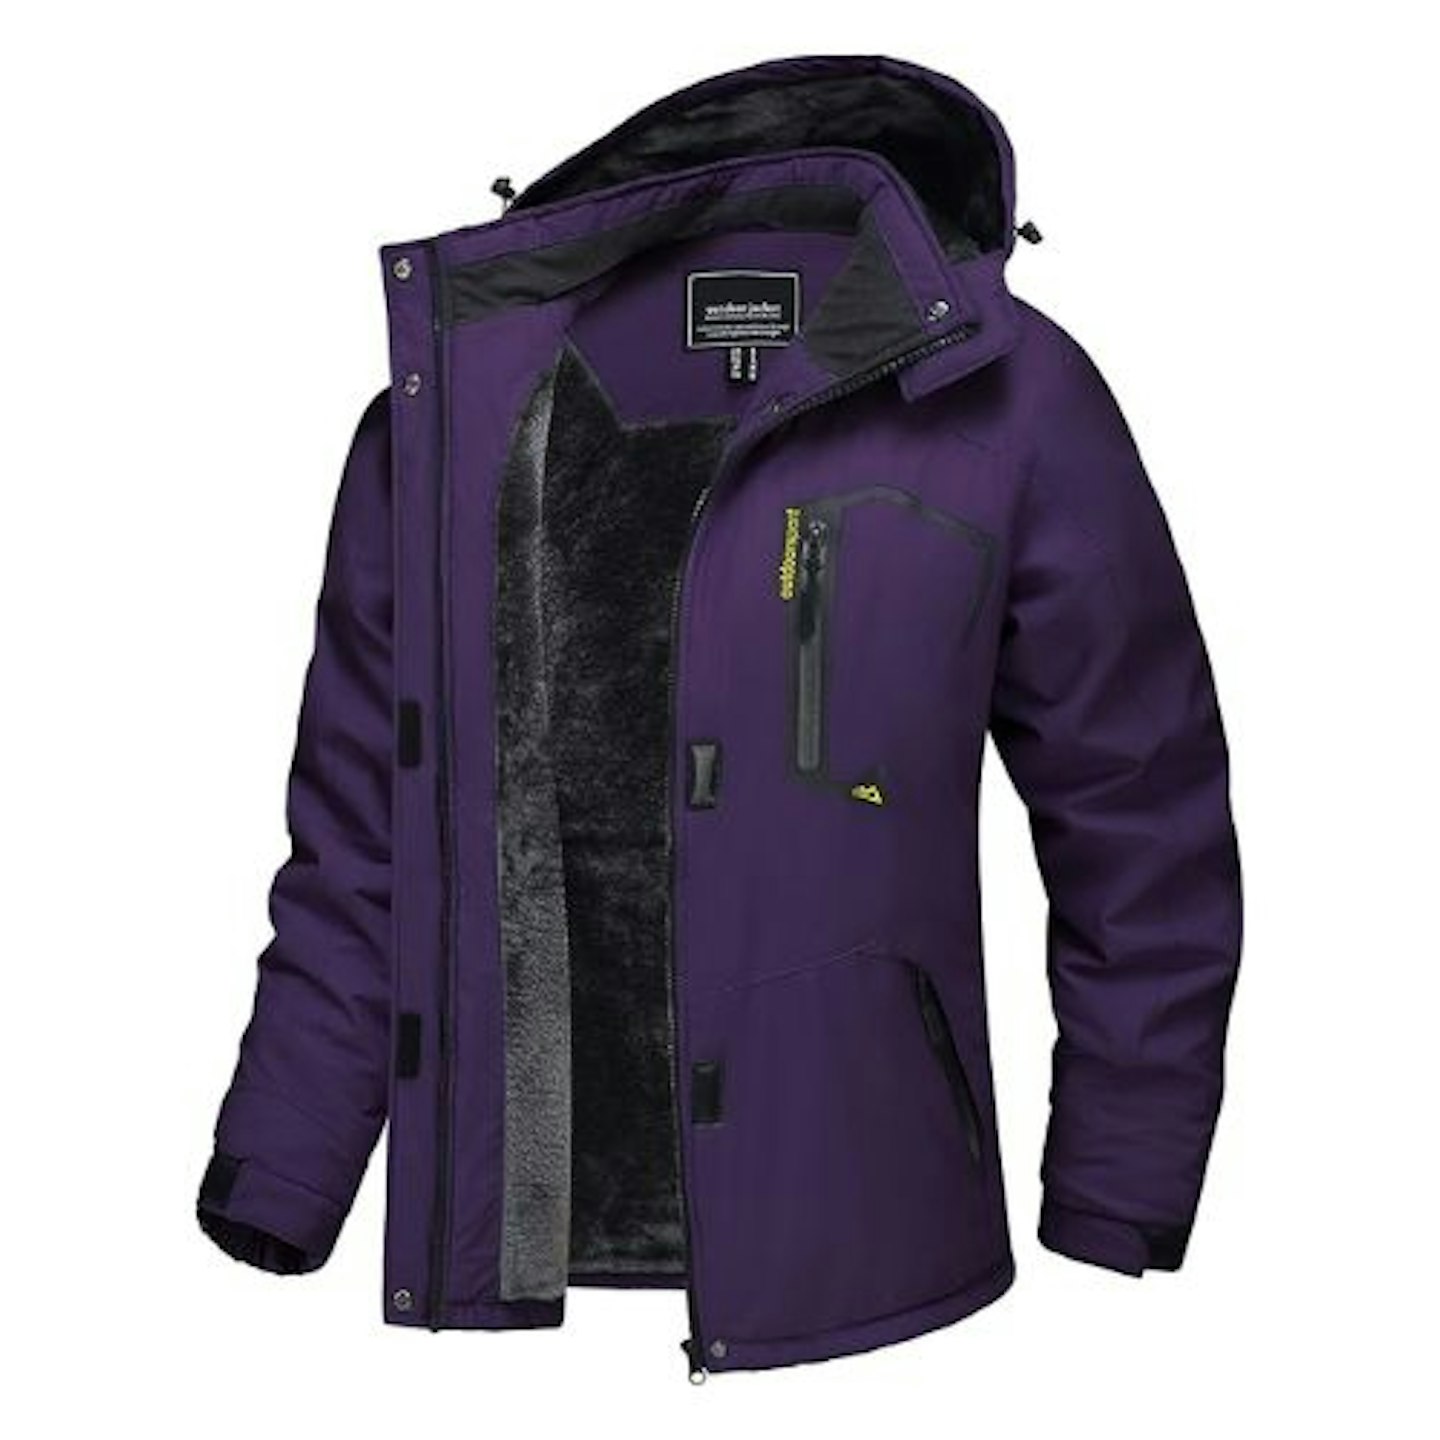 TACVASEN Women's Waterproof Jacket Winter Skiing Outdoor Walking Fleece Coat with Detachable Hood